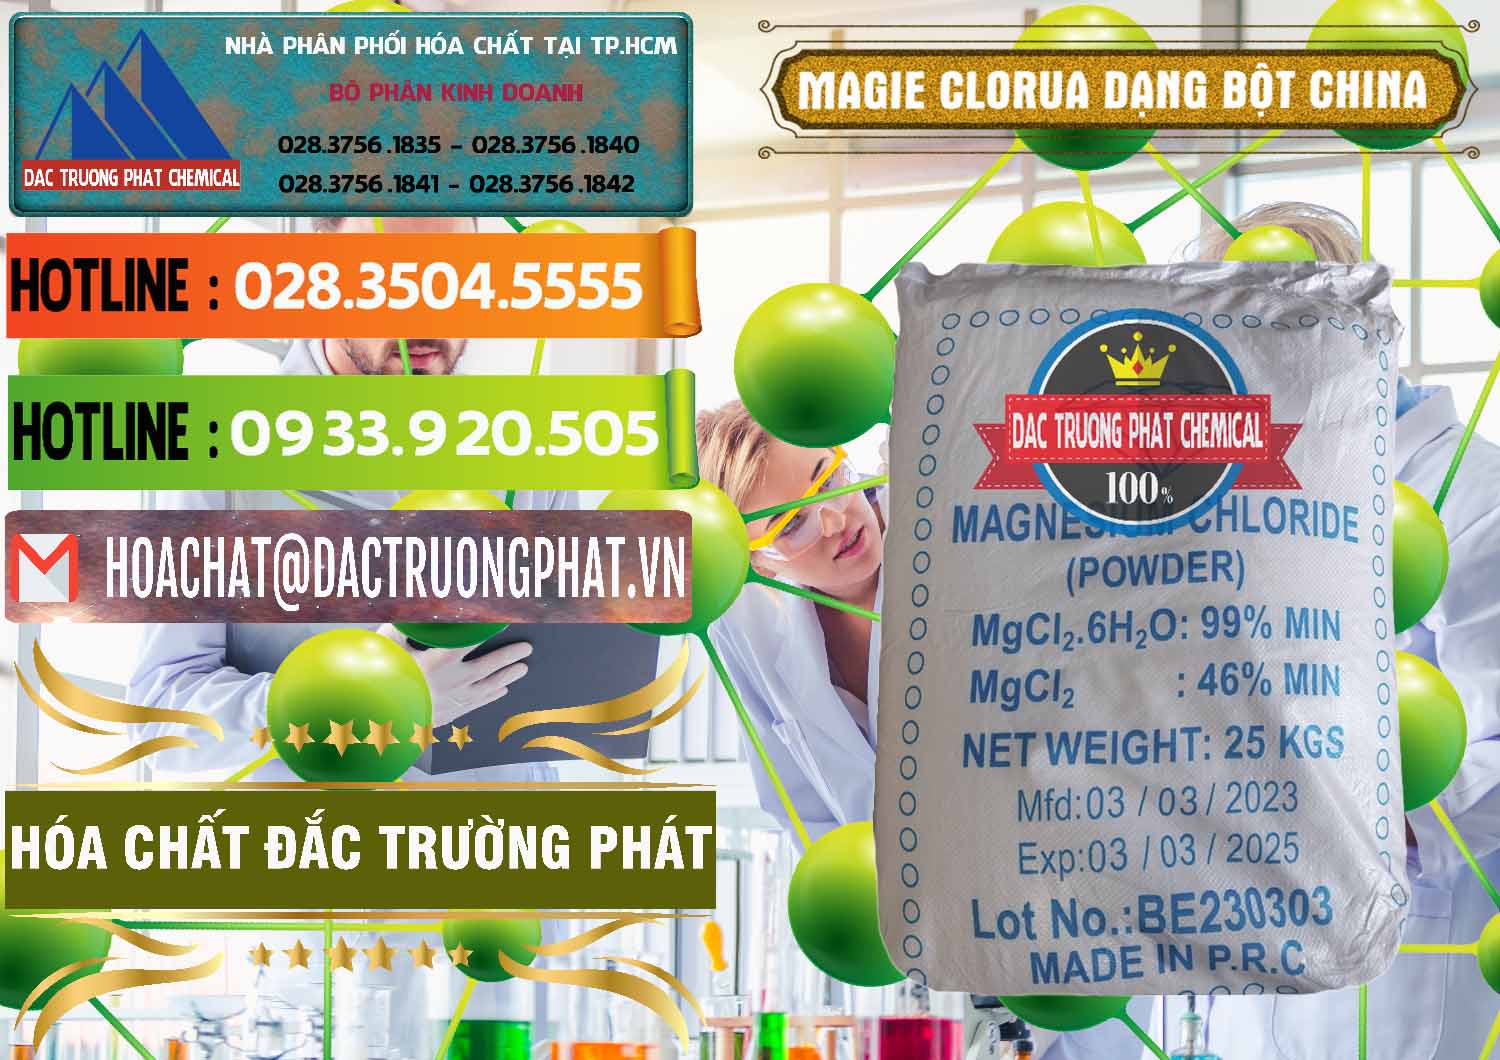 Công ty chuyên bán _ phân phối Magie Clorua – MGCL2 96% Dạng Bột Logo Kim Cương Trung Quốc China - 0387 - Đơn vị chuyên kinh doanh _ cung cấp hóa chất tại TP.HCM - cungcaphoachat.com.vn